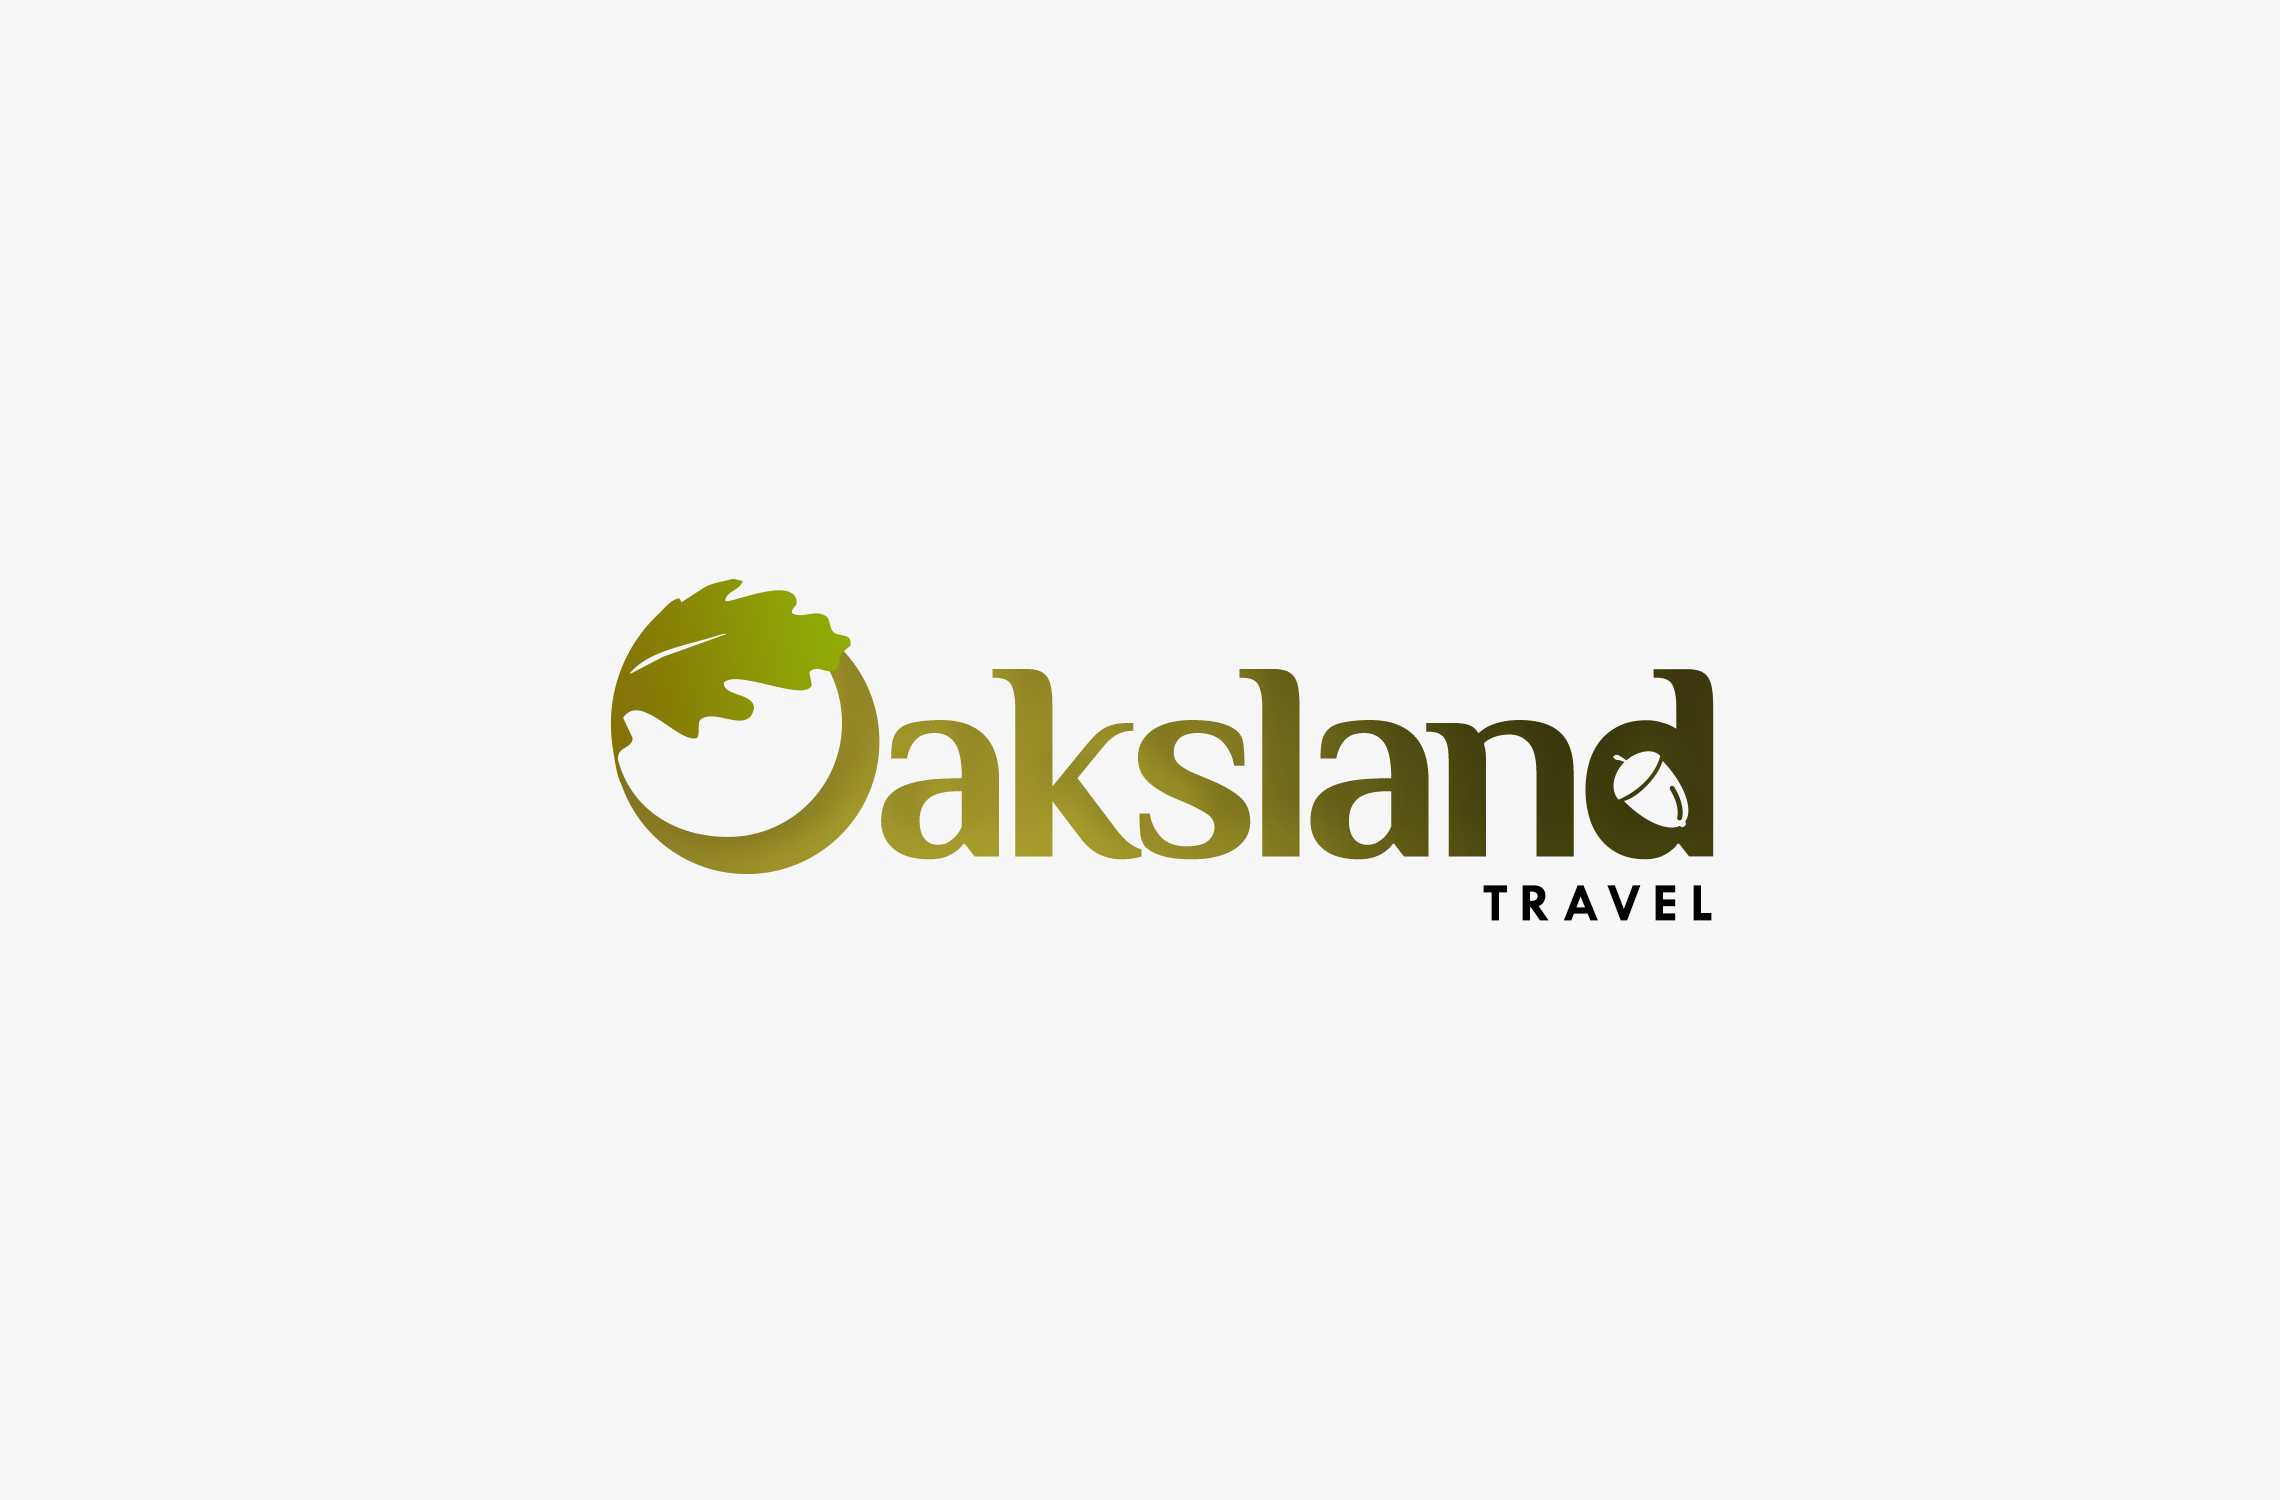 Oaksland Travel